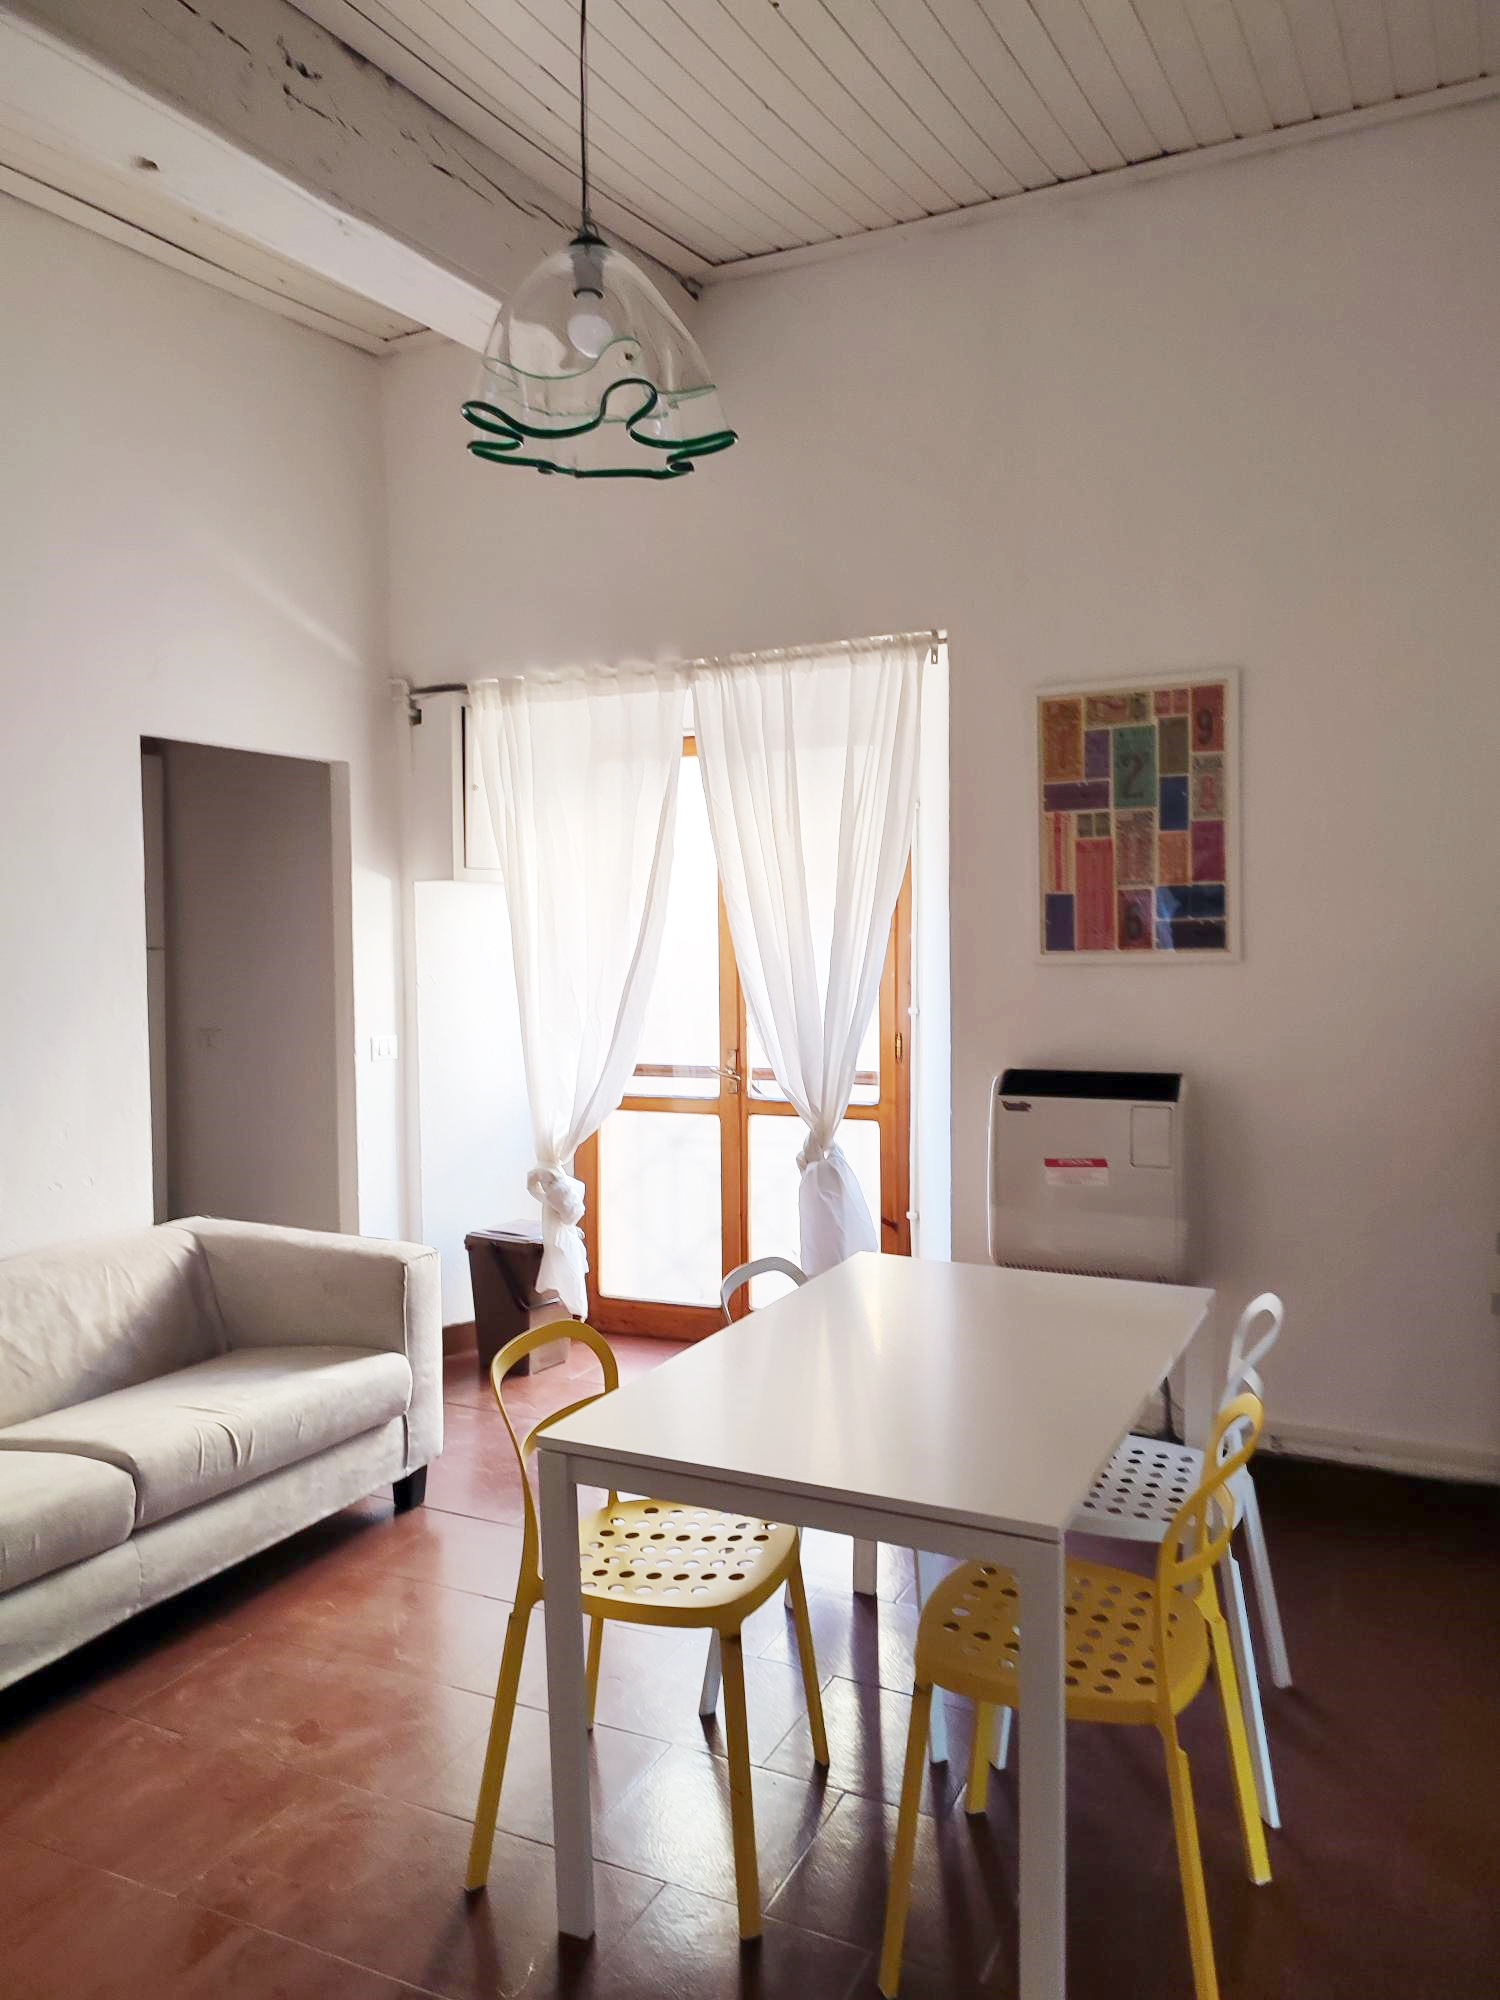 Living and dining area of student apartment in Reggio Emilia, Italy.